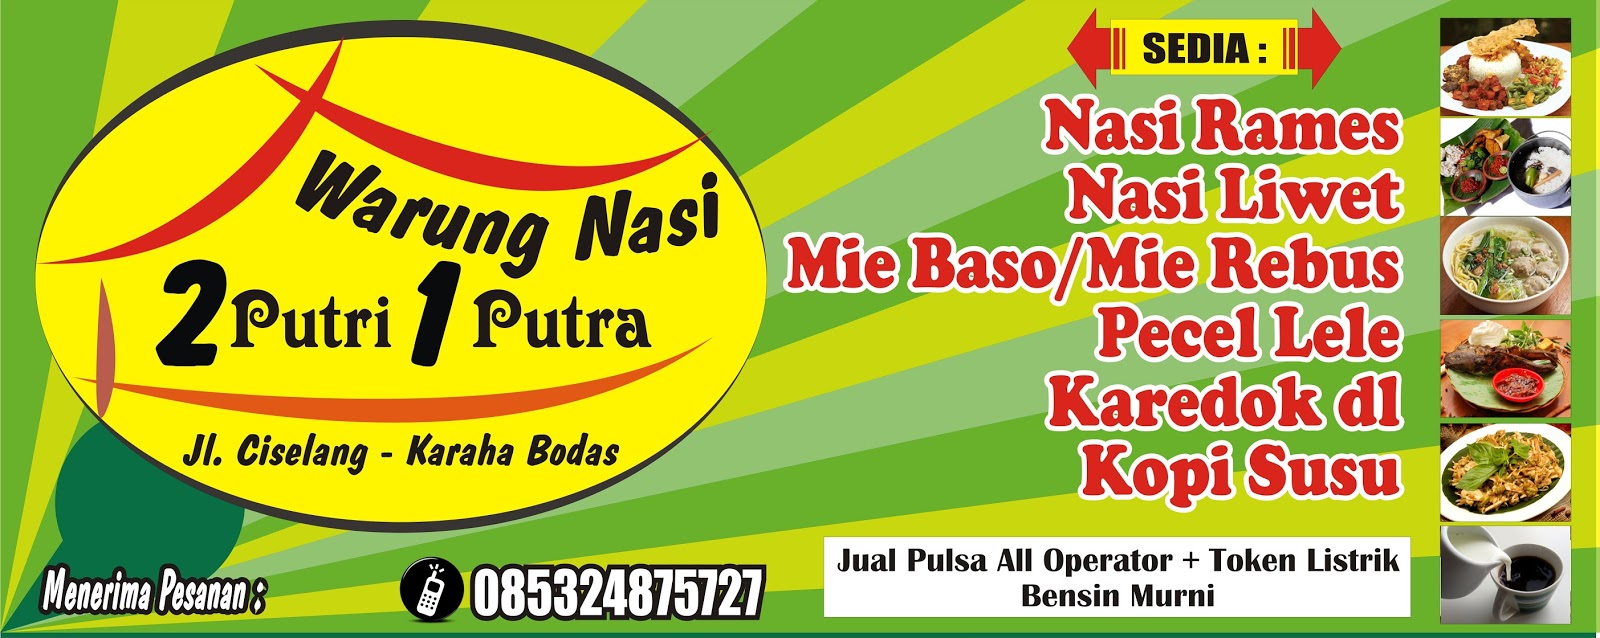 Download Kumpulan Contoh Spanduk Warung Nasi.cdr - KARYAKU